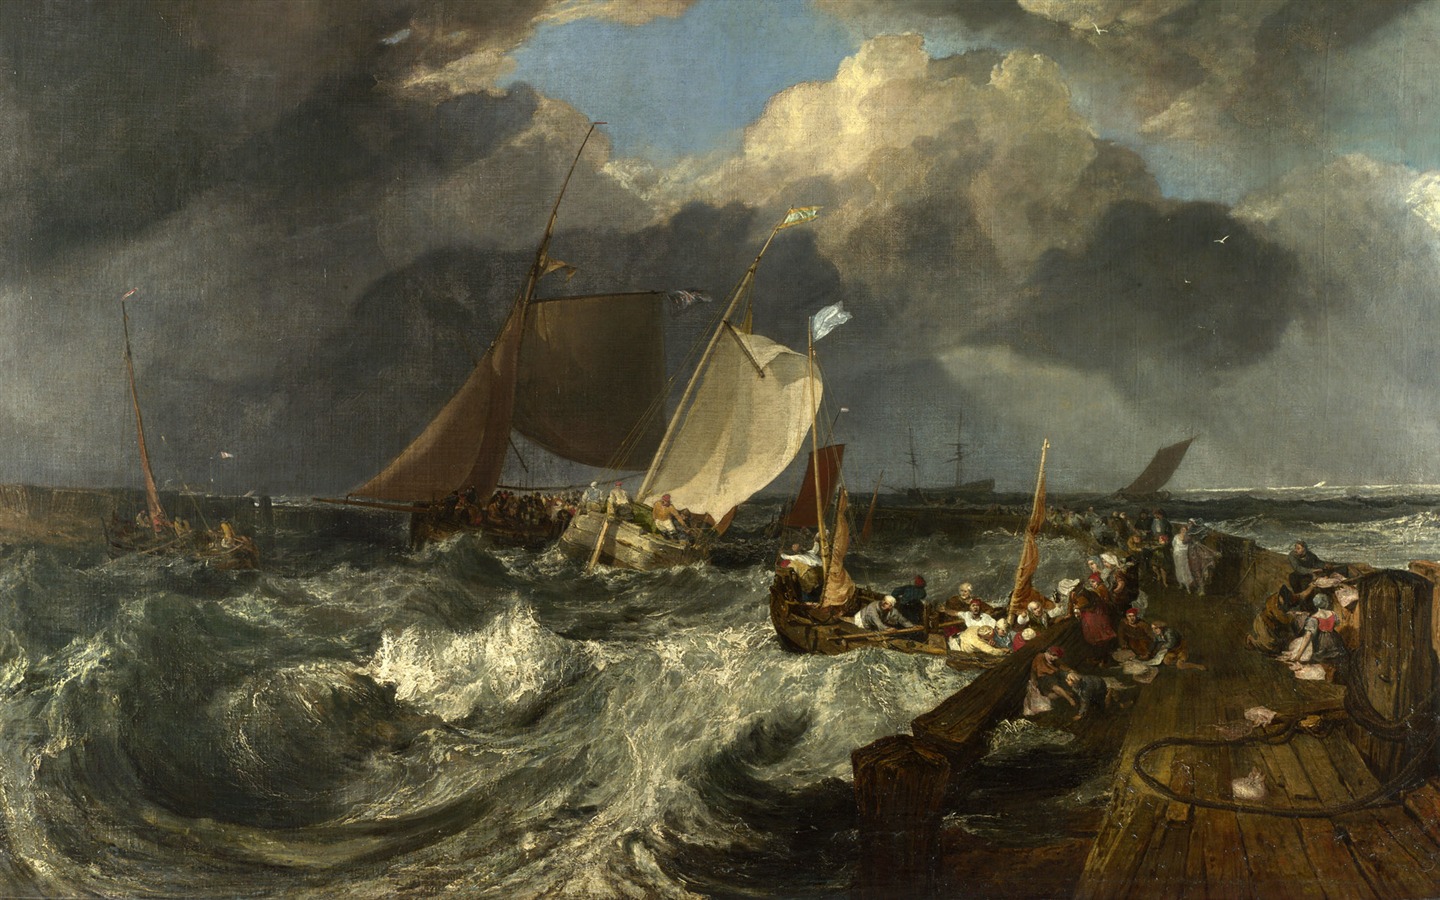 伦敦画廊帆船 壁纸(一)13 - 1440x900